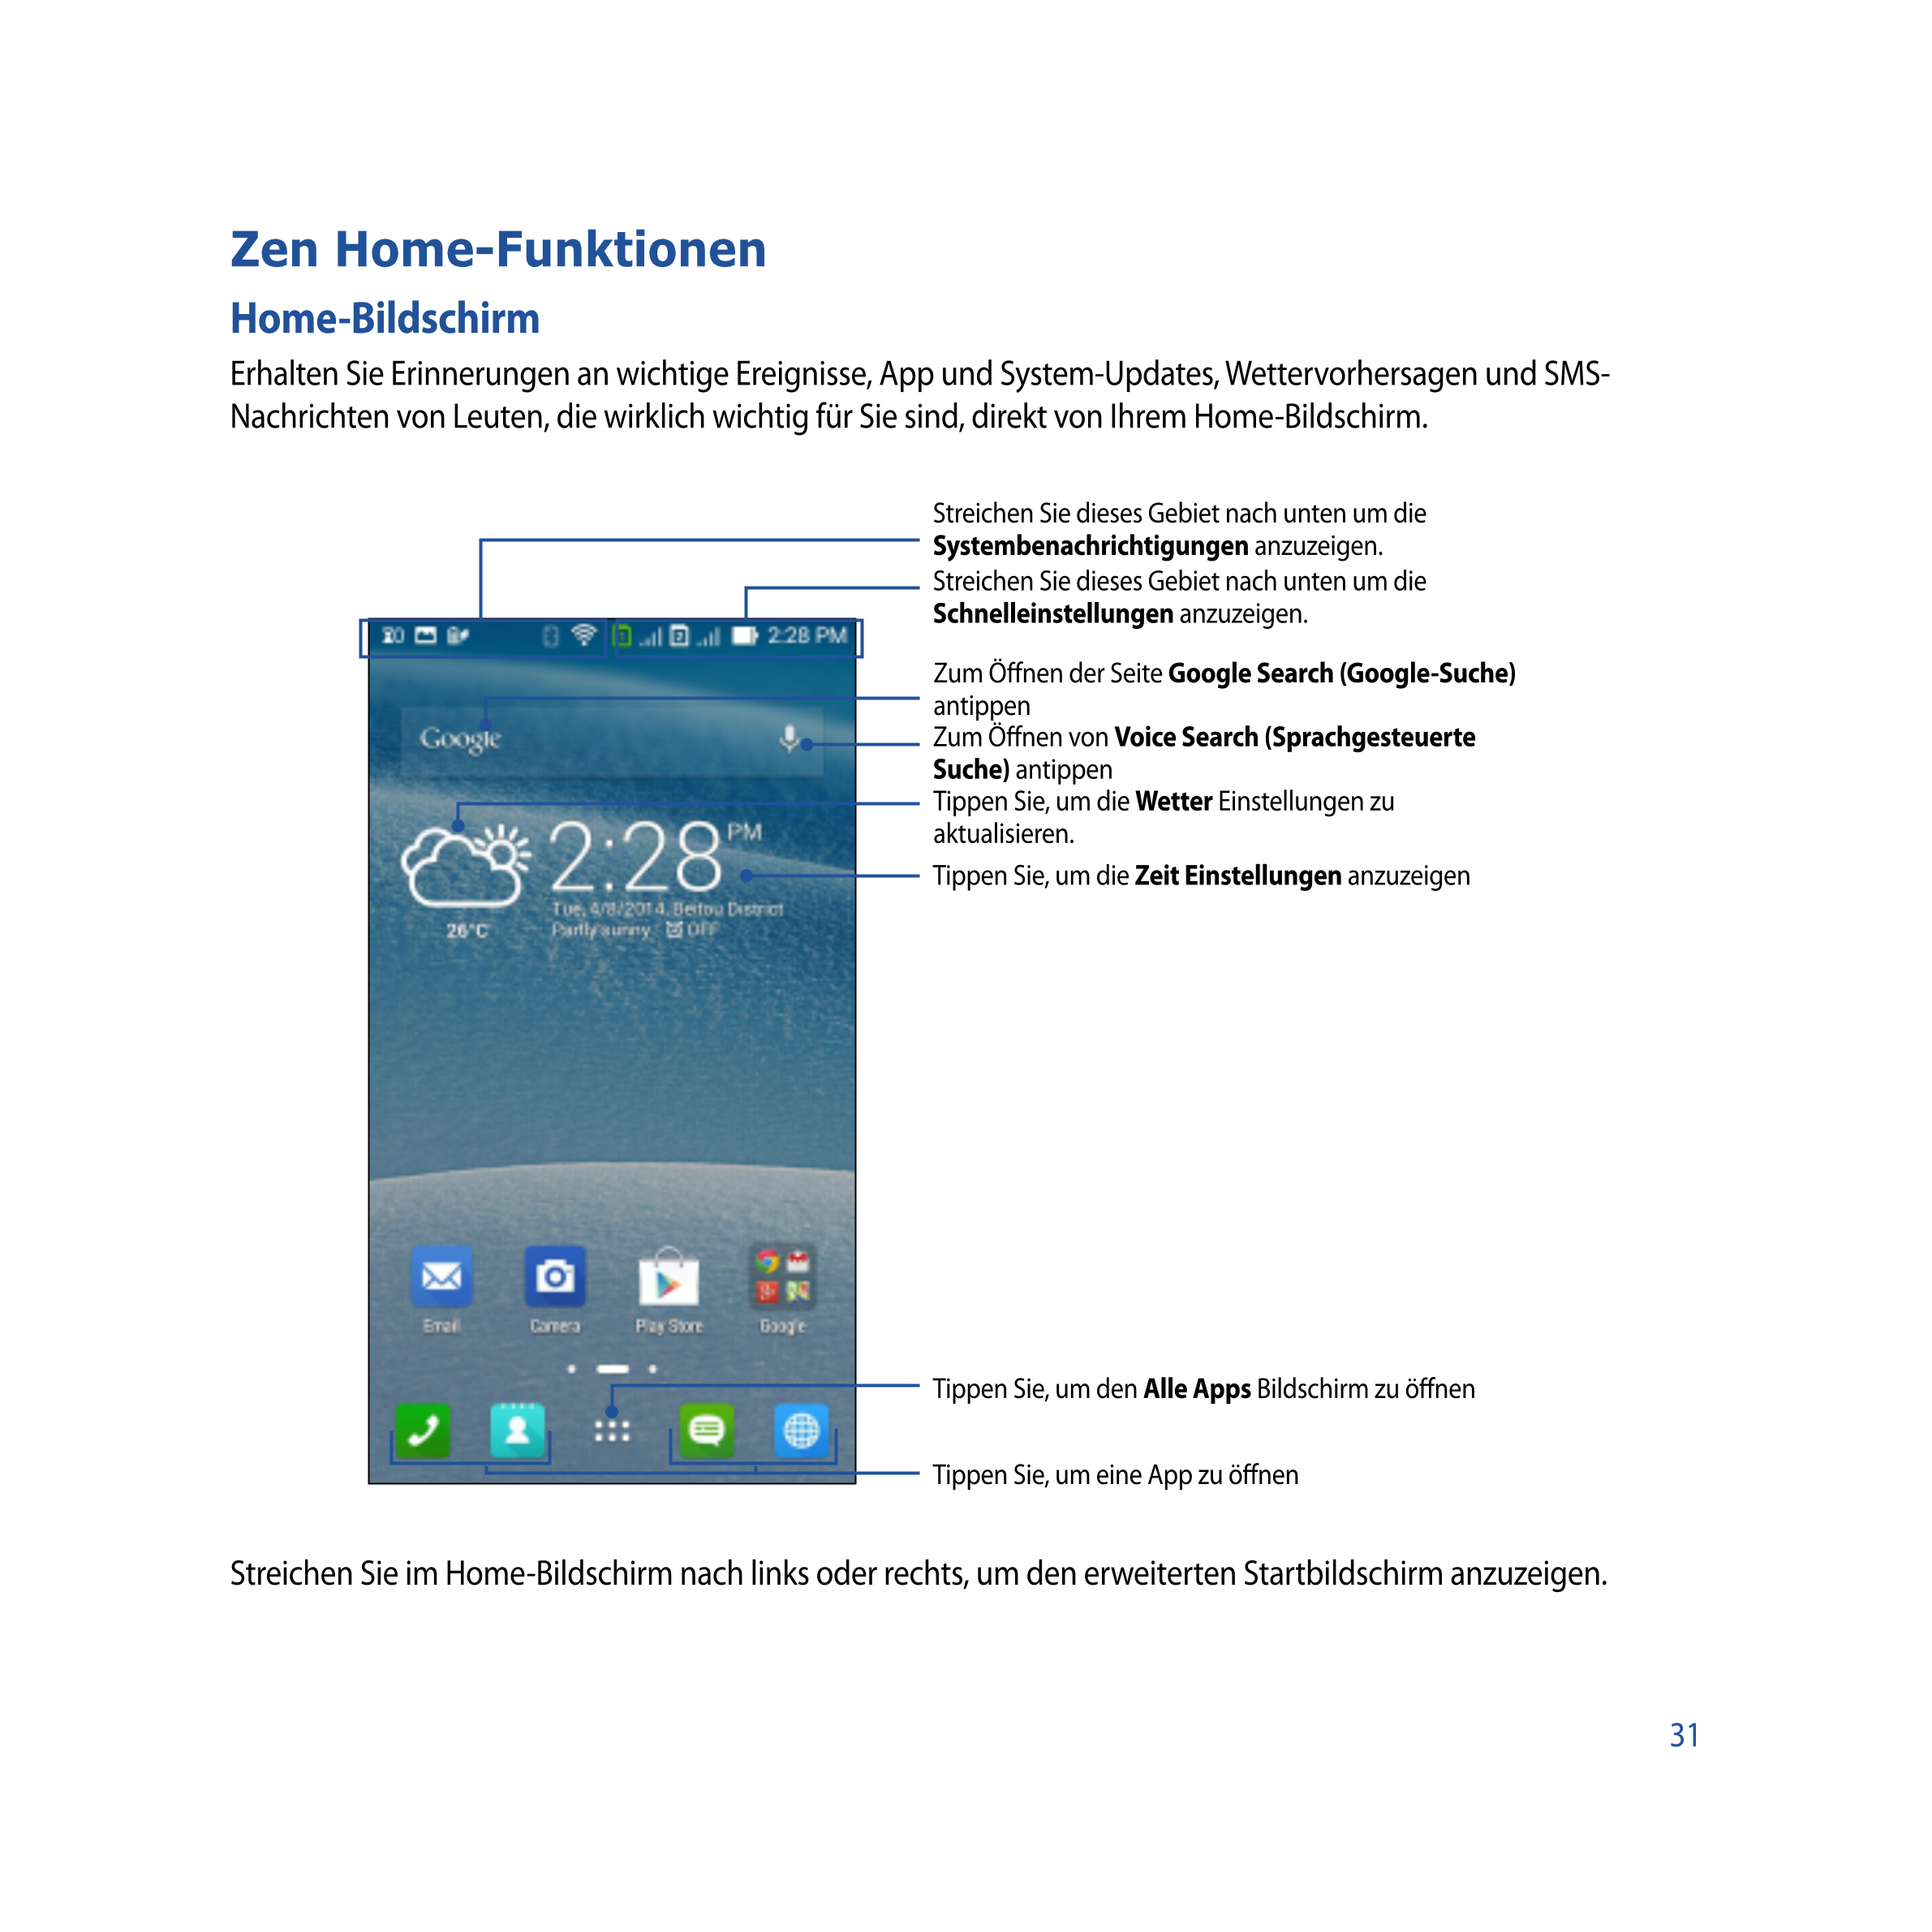 Zen Home-Funktionen
Home-Bildschirm
Erhalten Sie Erinnerungen an wichtige Ereignisse, App und System-Updates, Wettervorhersagen 